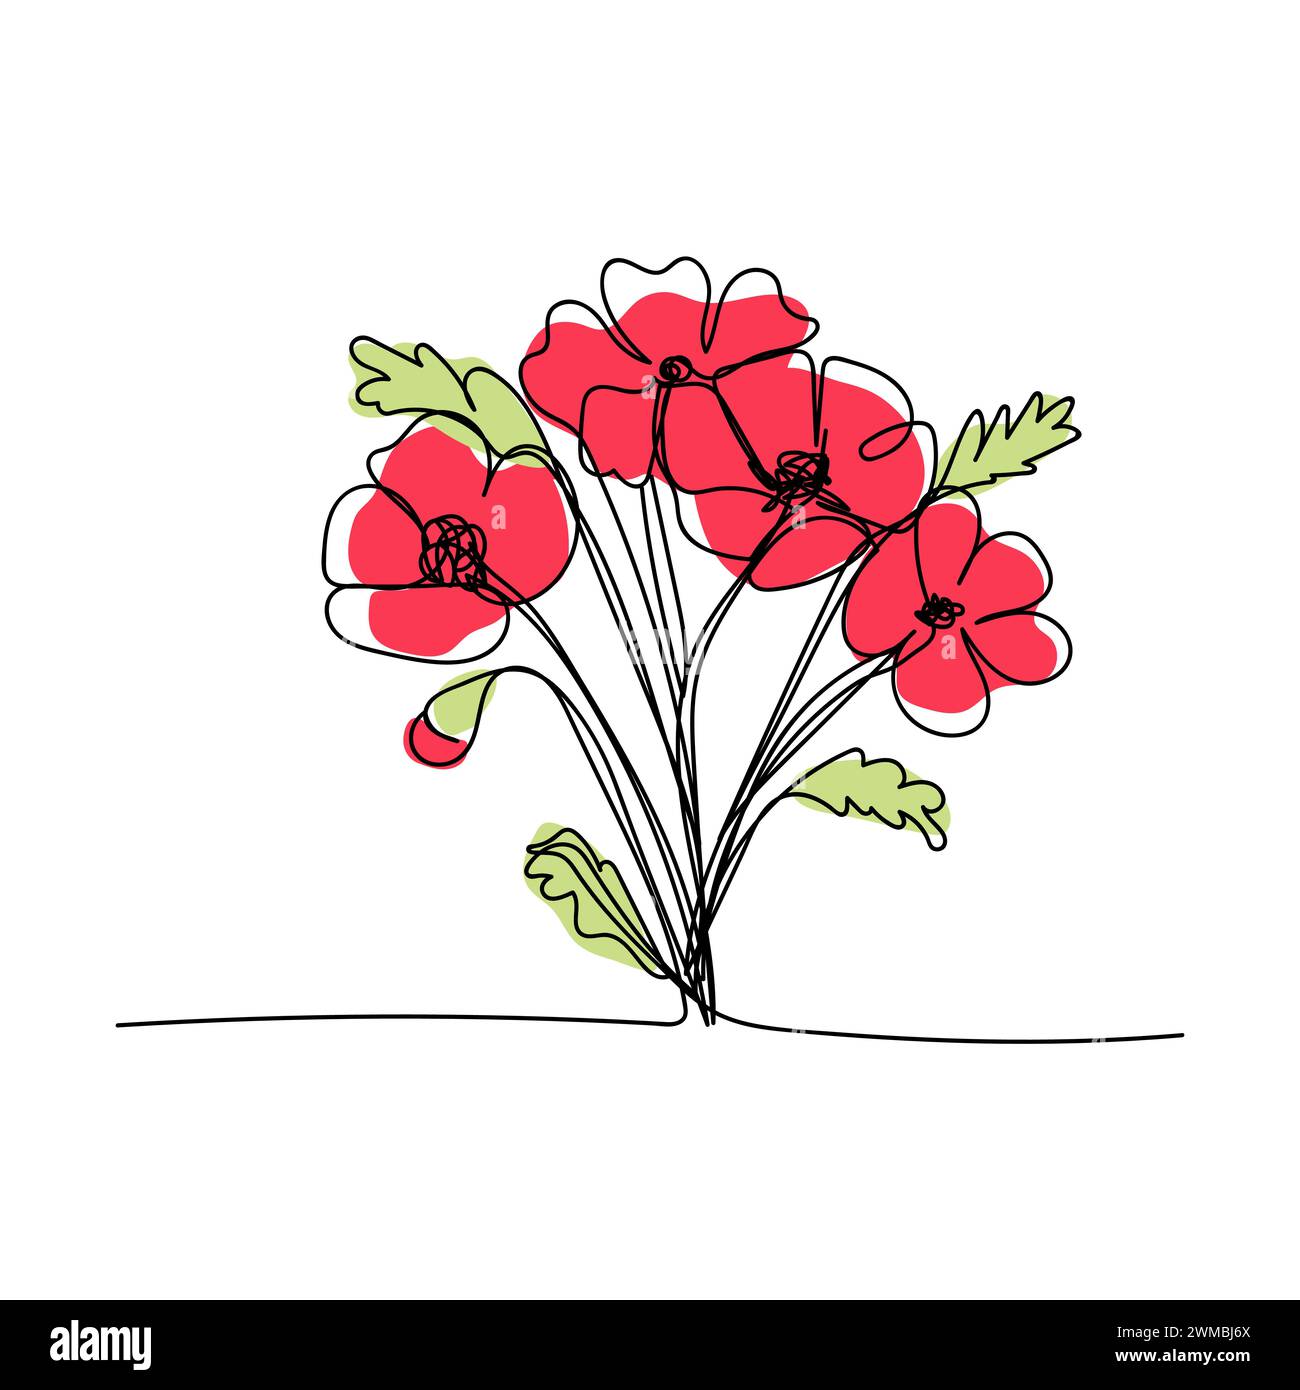 Strichkunst, Blumenstrauß Mohnblumen im Frühling und Sommer, einzeilige Zeichnung. Weißer Vektor-Hintergrund Stock Vektor